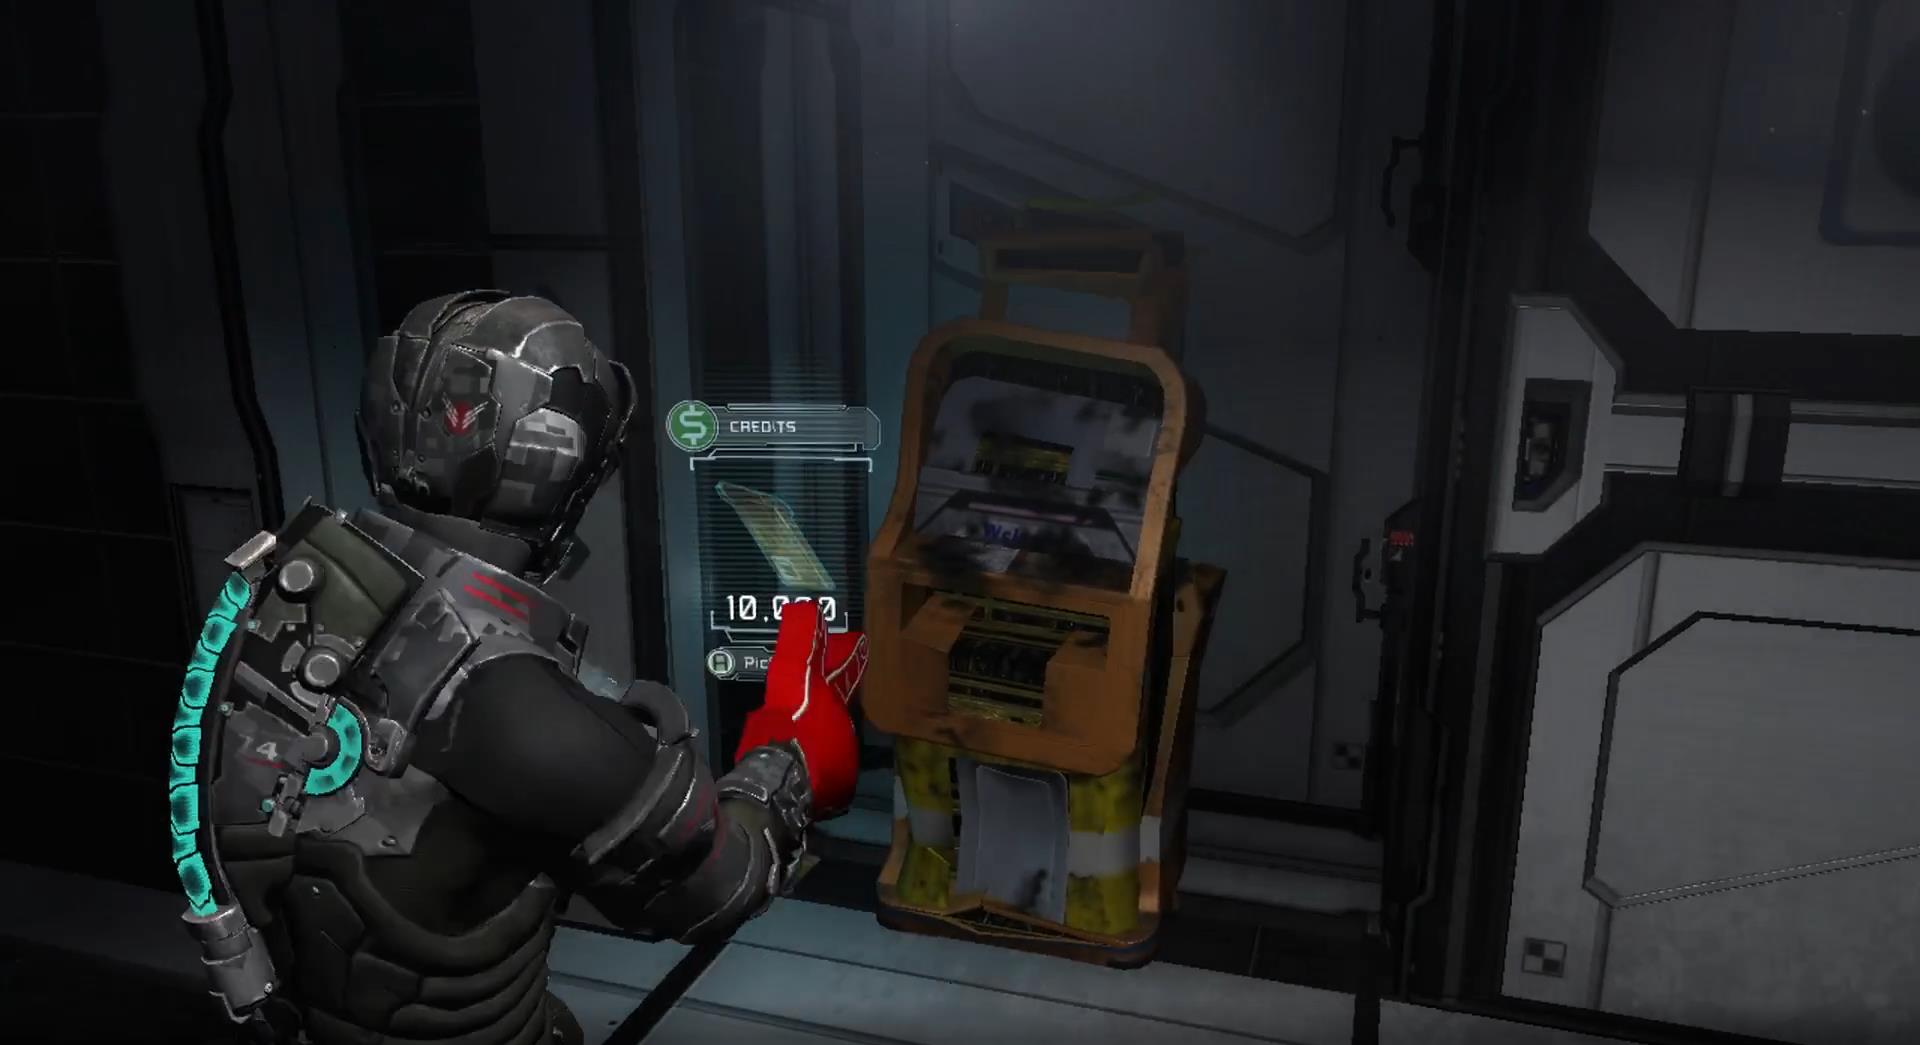 玩家在13年后发现《死亡空间2》获取额外补给的新方法